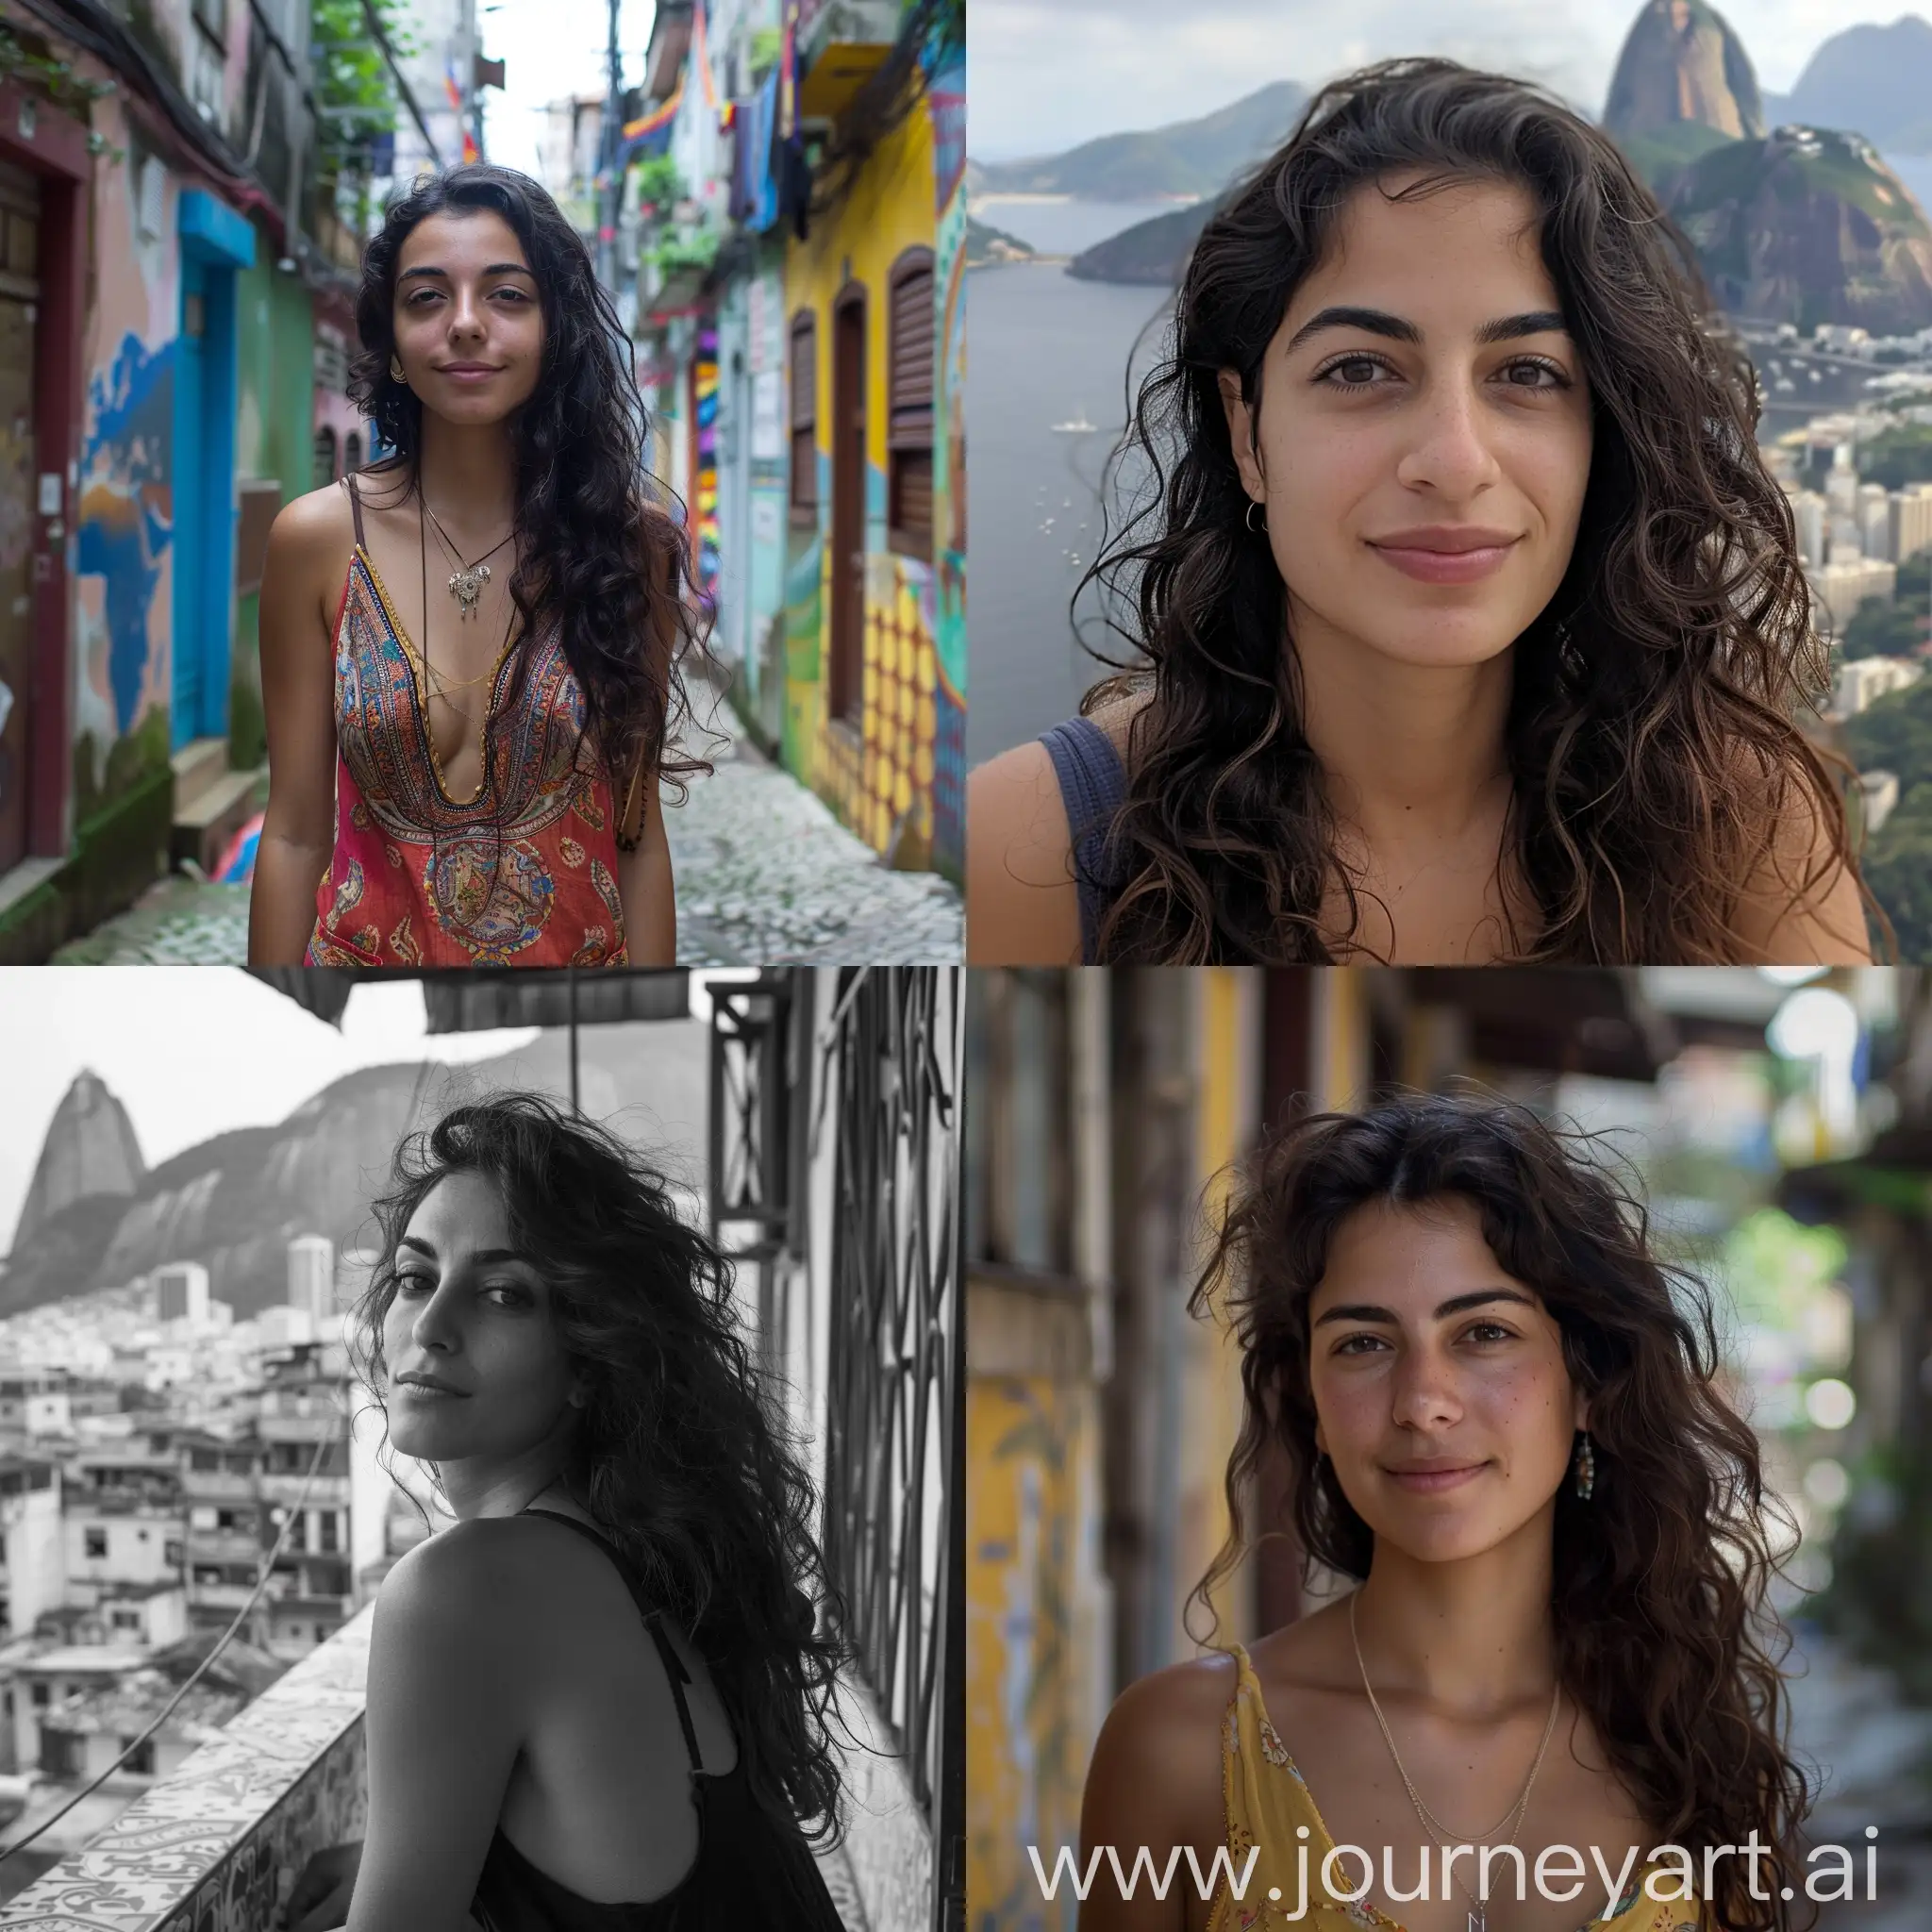 a 24-year-old Lebanese woman in Rio de Janeiro